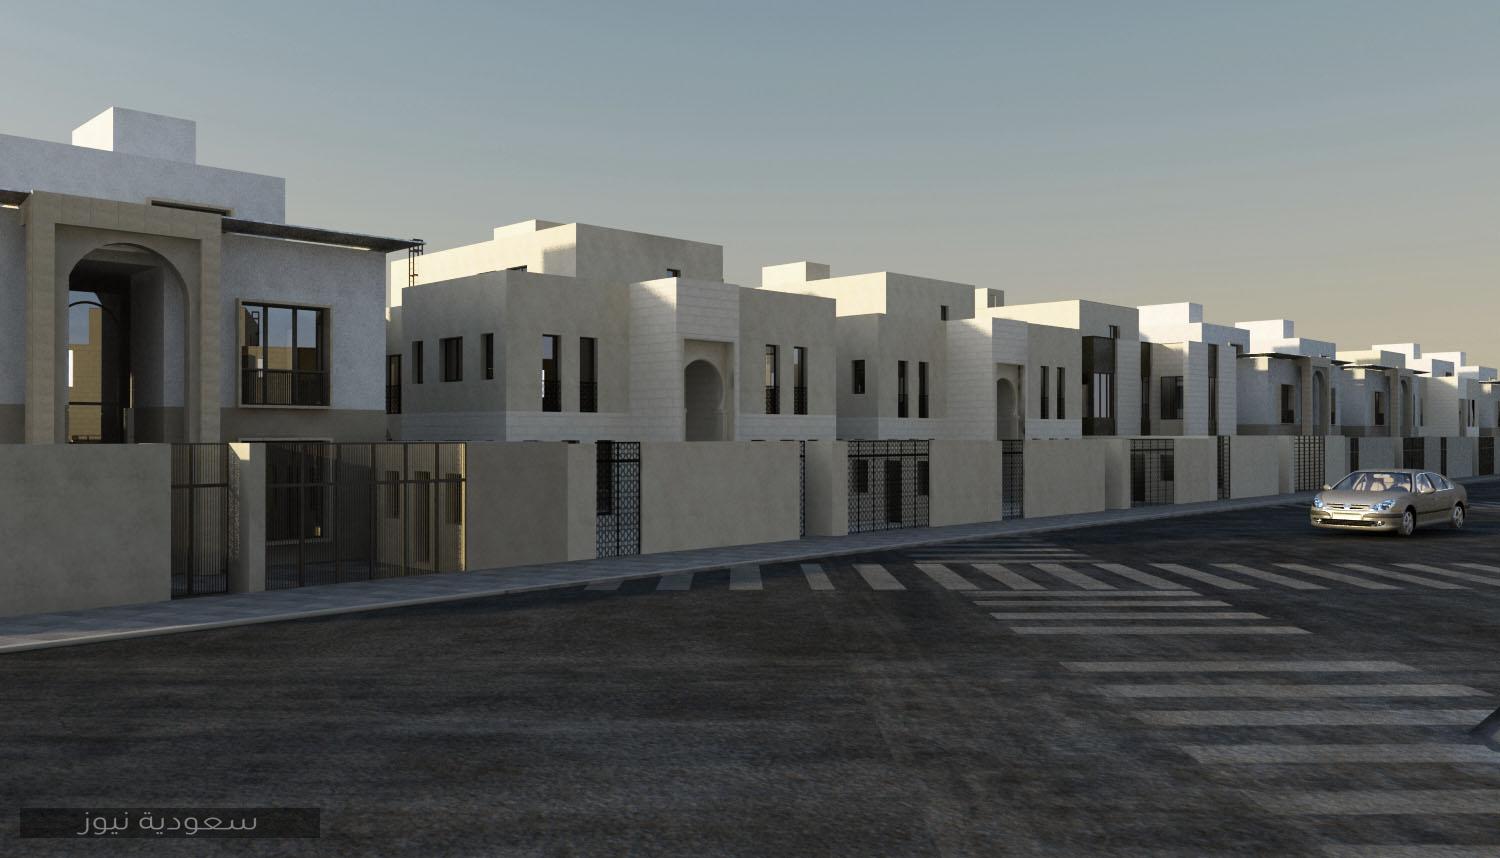 “سكني”: إضافة 10 ألاف أرض سكنية جديدة عبر التطبيق